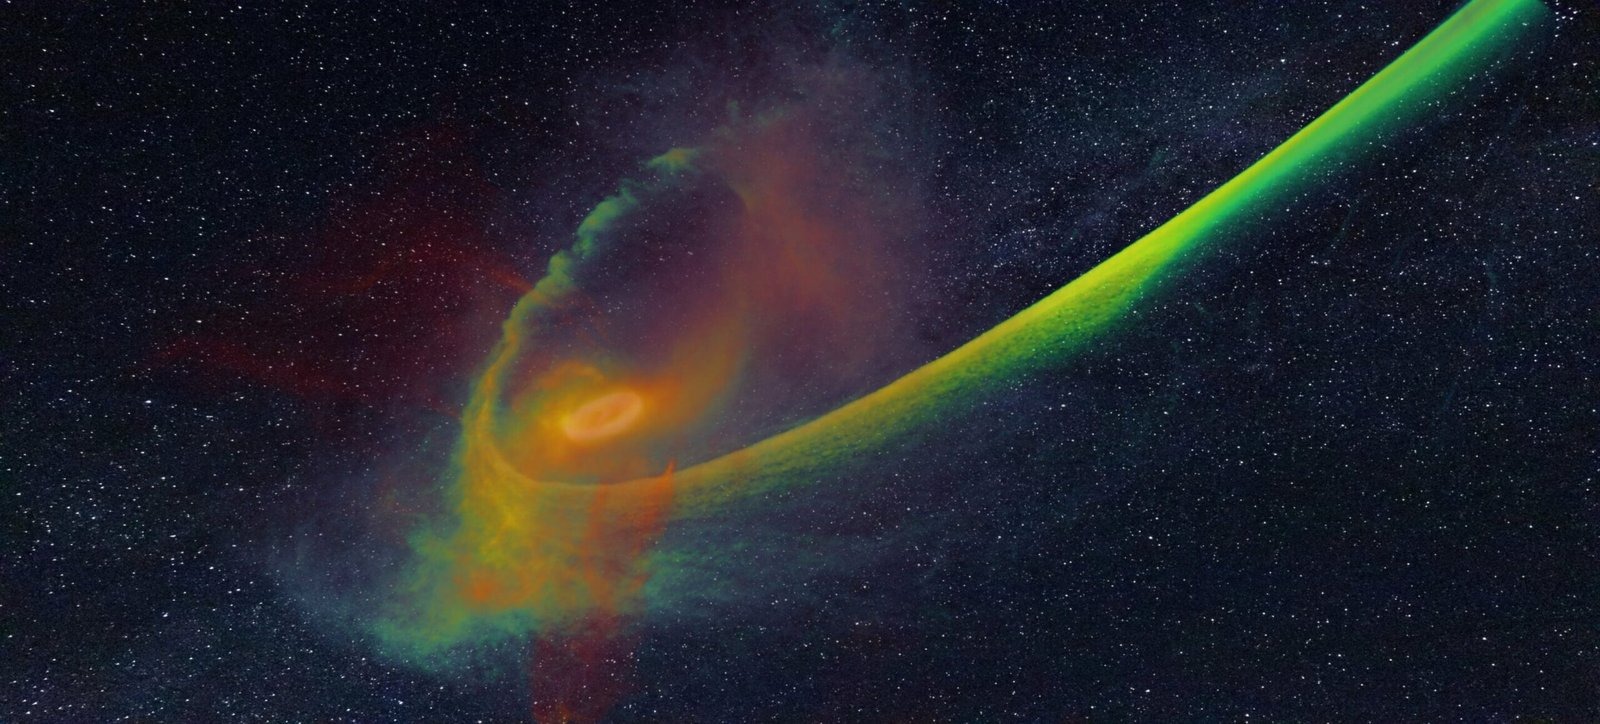 Иллюстрация моделирования разрыва звезды на части черной дырой